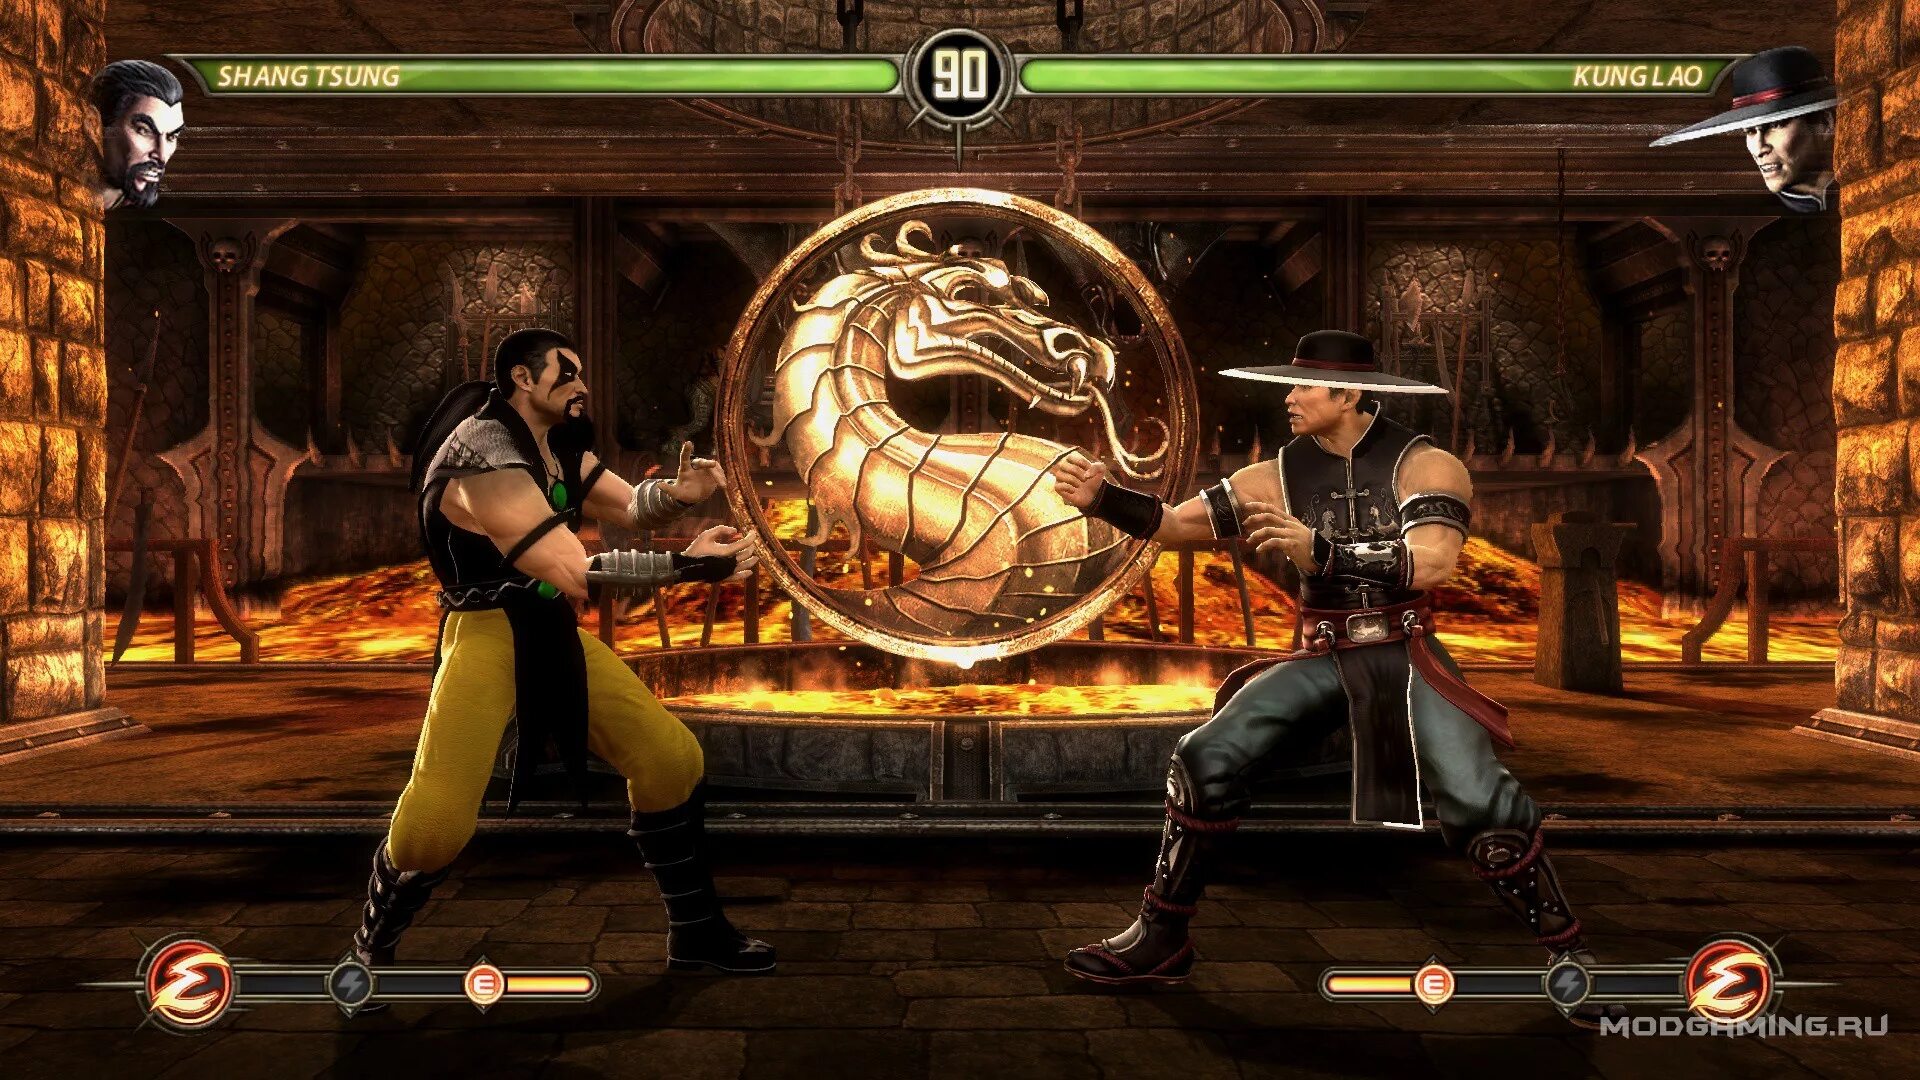 Шанг Цунг мортал комбат 3. Игра мортал комбат игра мортал комбат. Mortal Mortal Kombat 3 Shang Tsung. Mortal Kombat 2002. Старые версии игры мортал комбат